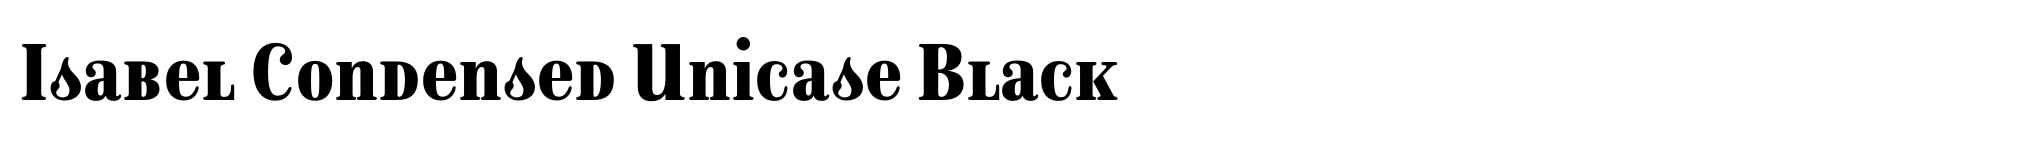 Isabel Condensed Unicase Black image